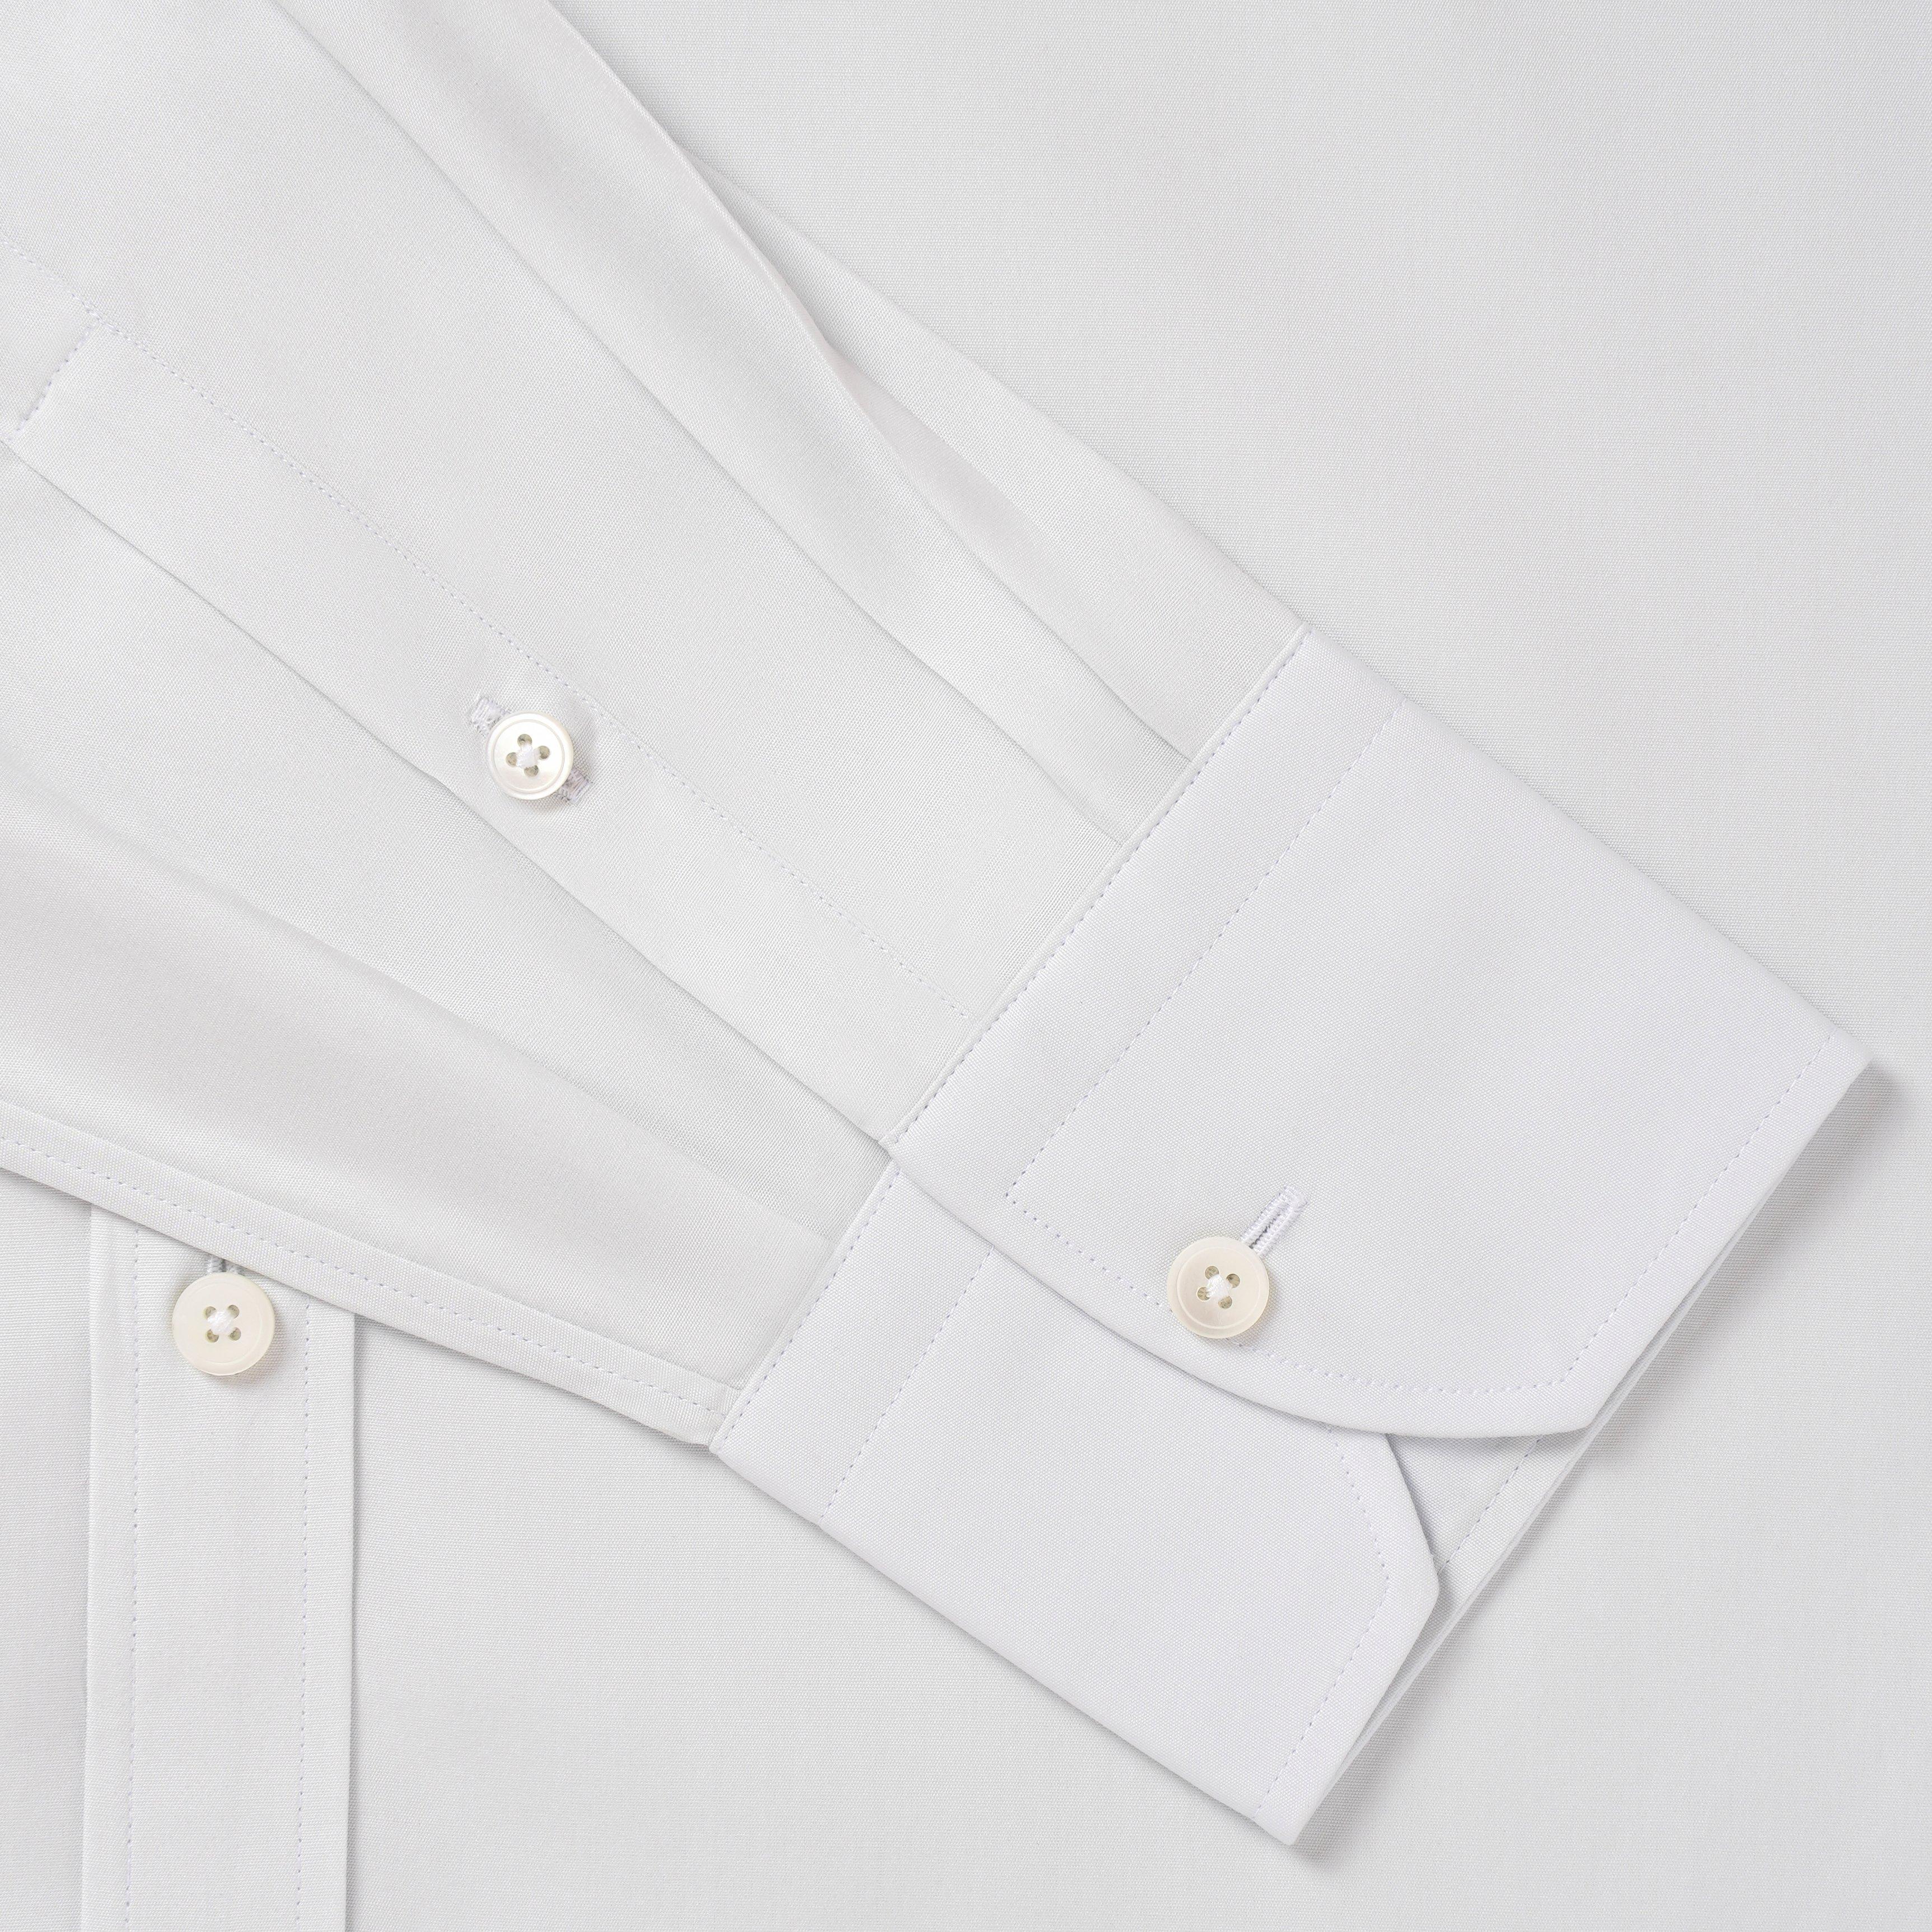 Thomas Pink Algernon Stripe Shirt, Navy/White, 14